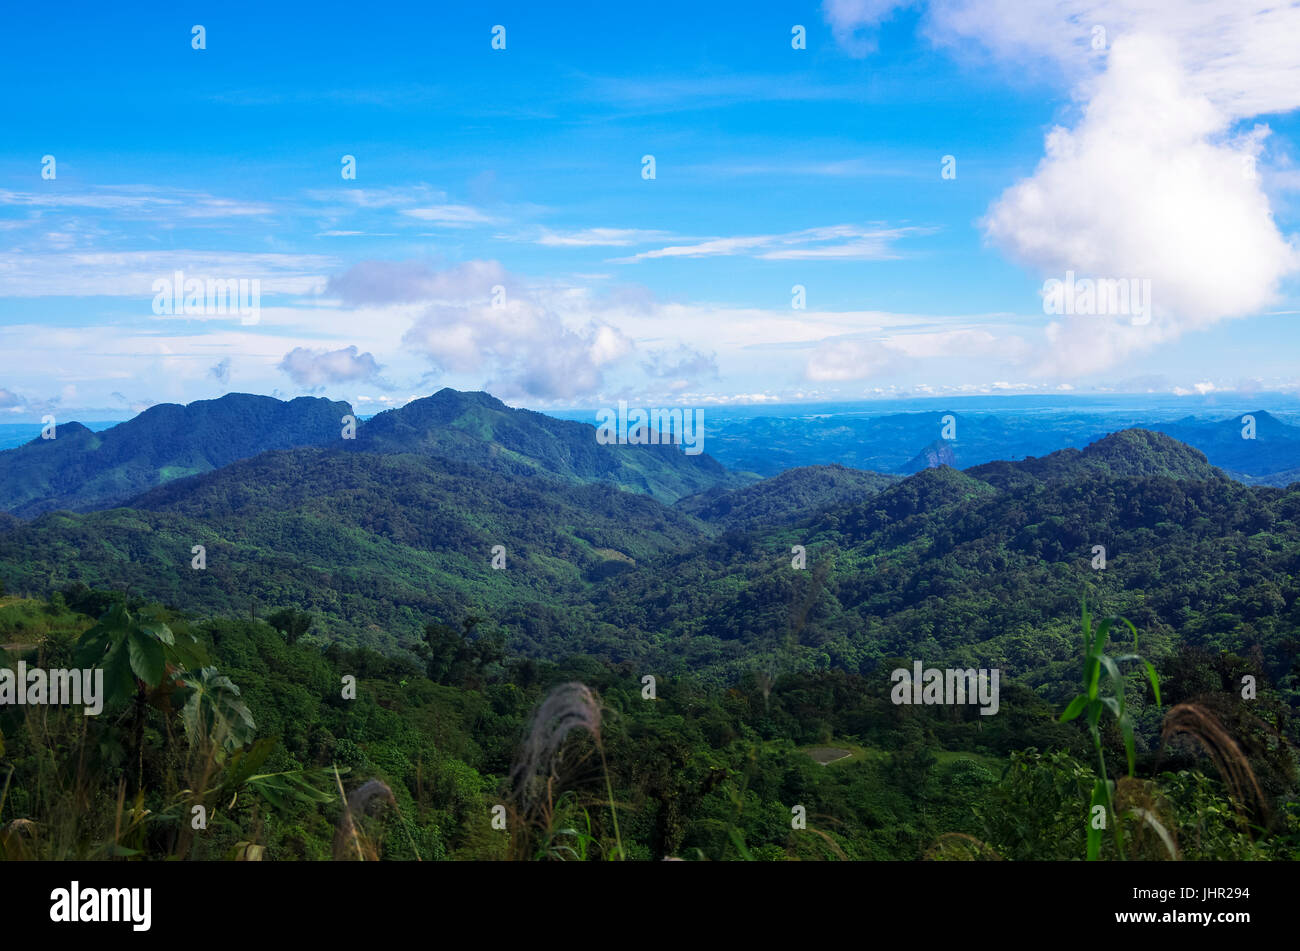 Paisaje de imágenes tomadas en las montañas de Panamá en Altos del Maria Foto de stock